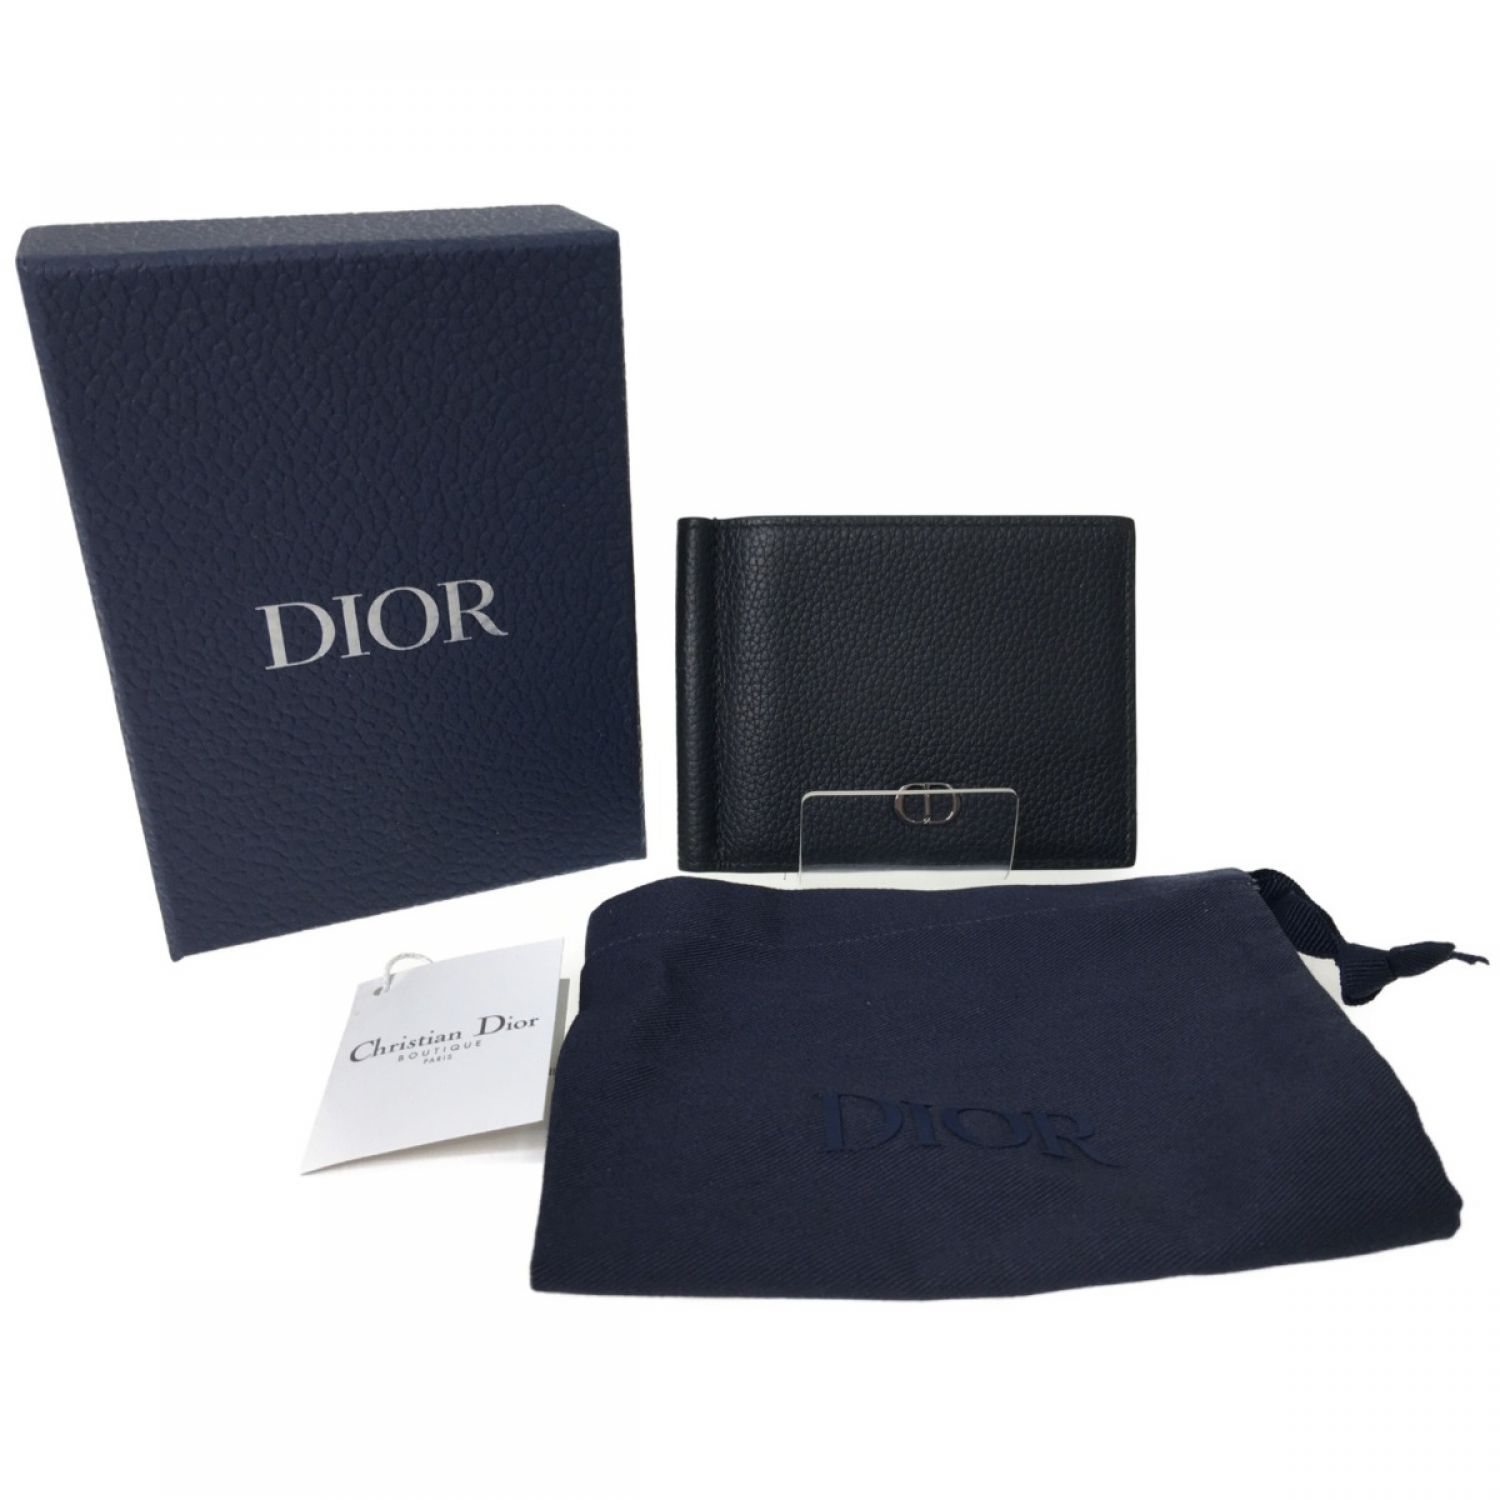 中古】 Christian Dior クリスチャンディオール ディオールオム メンズ